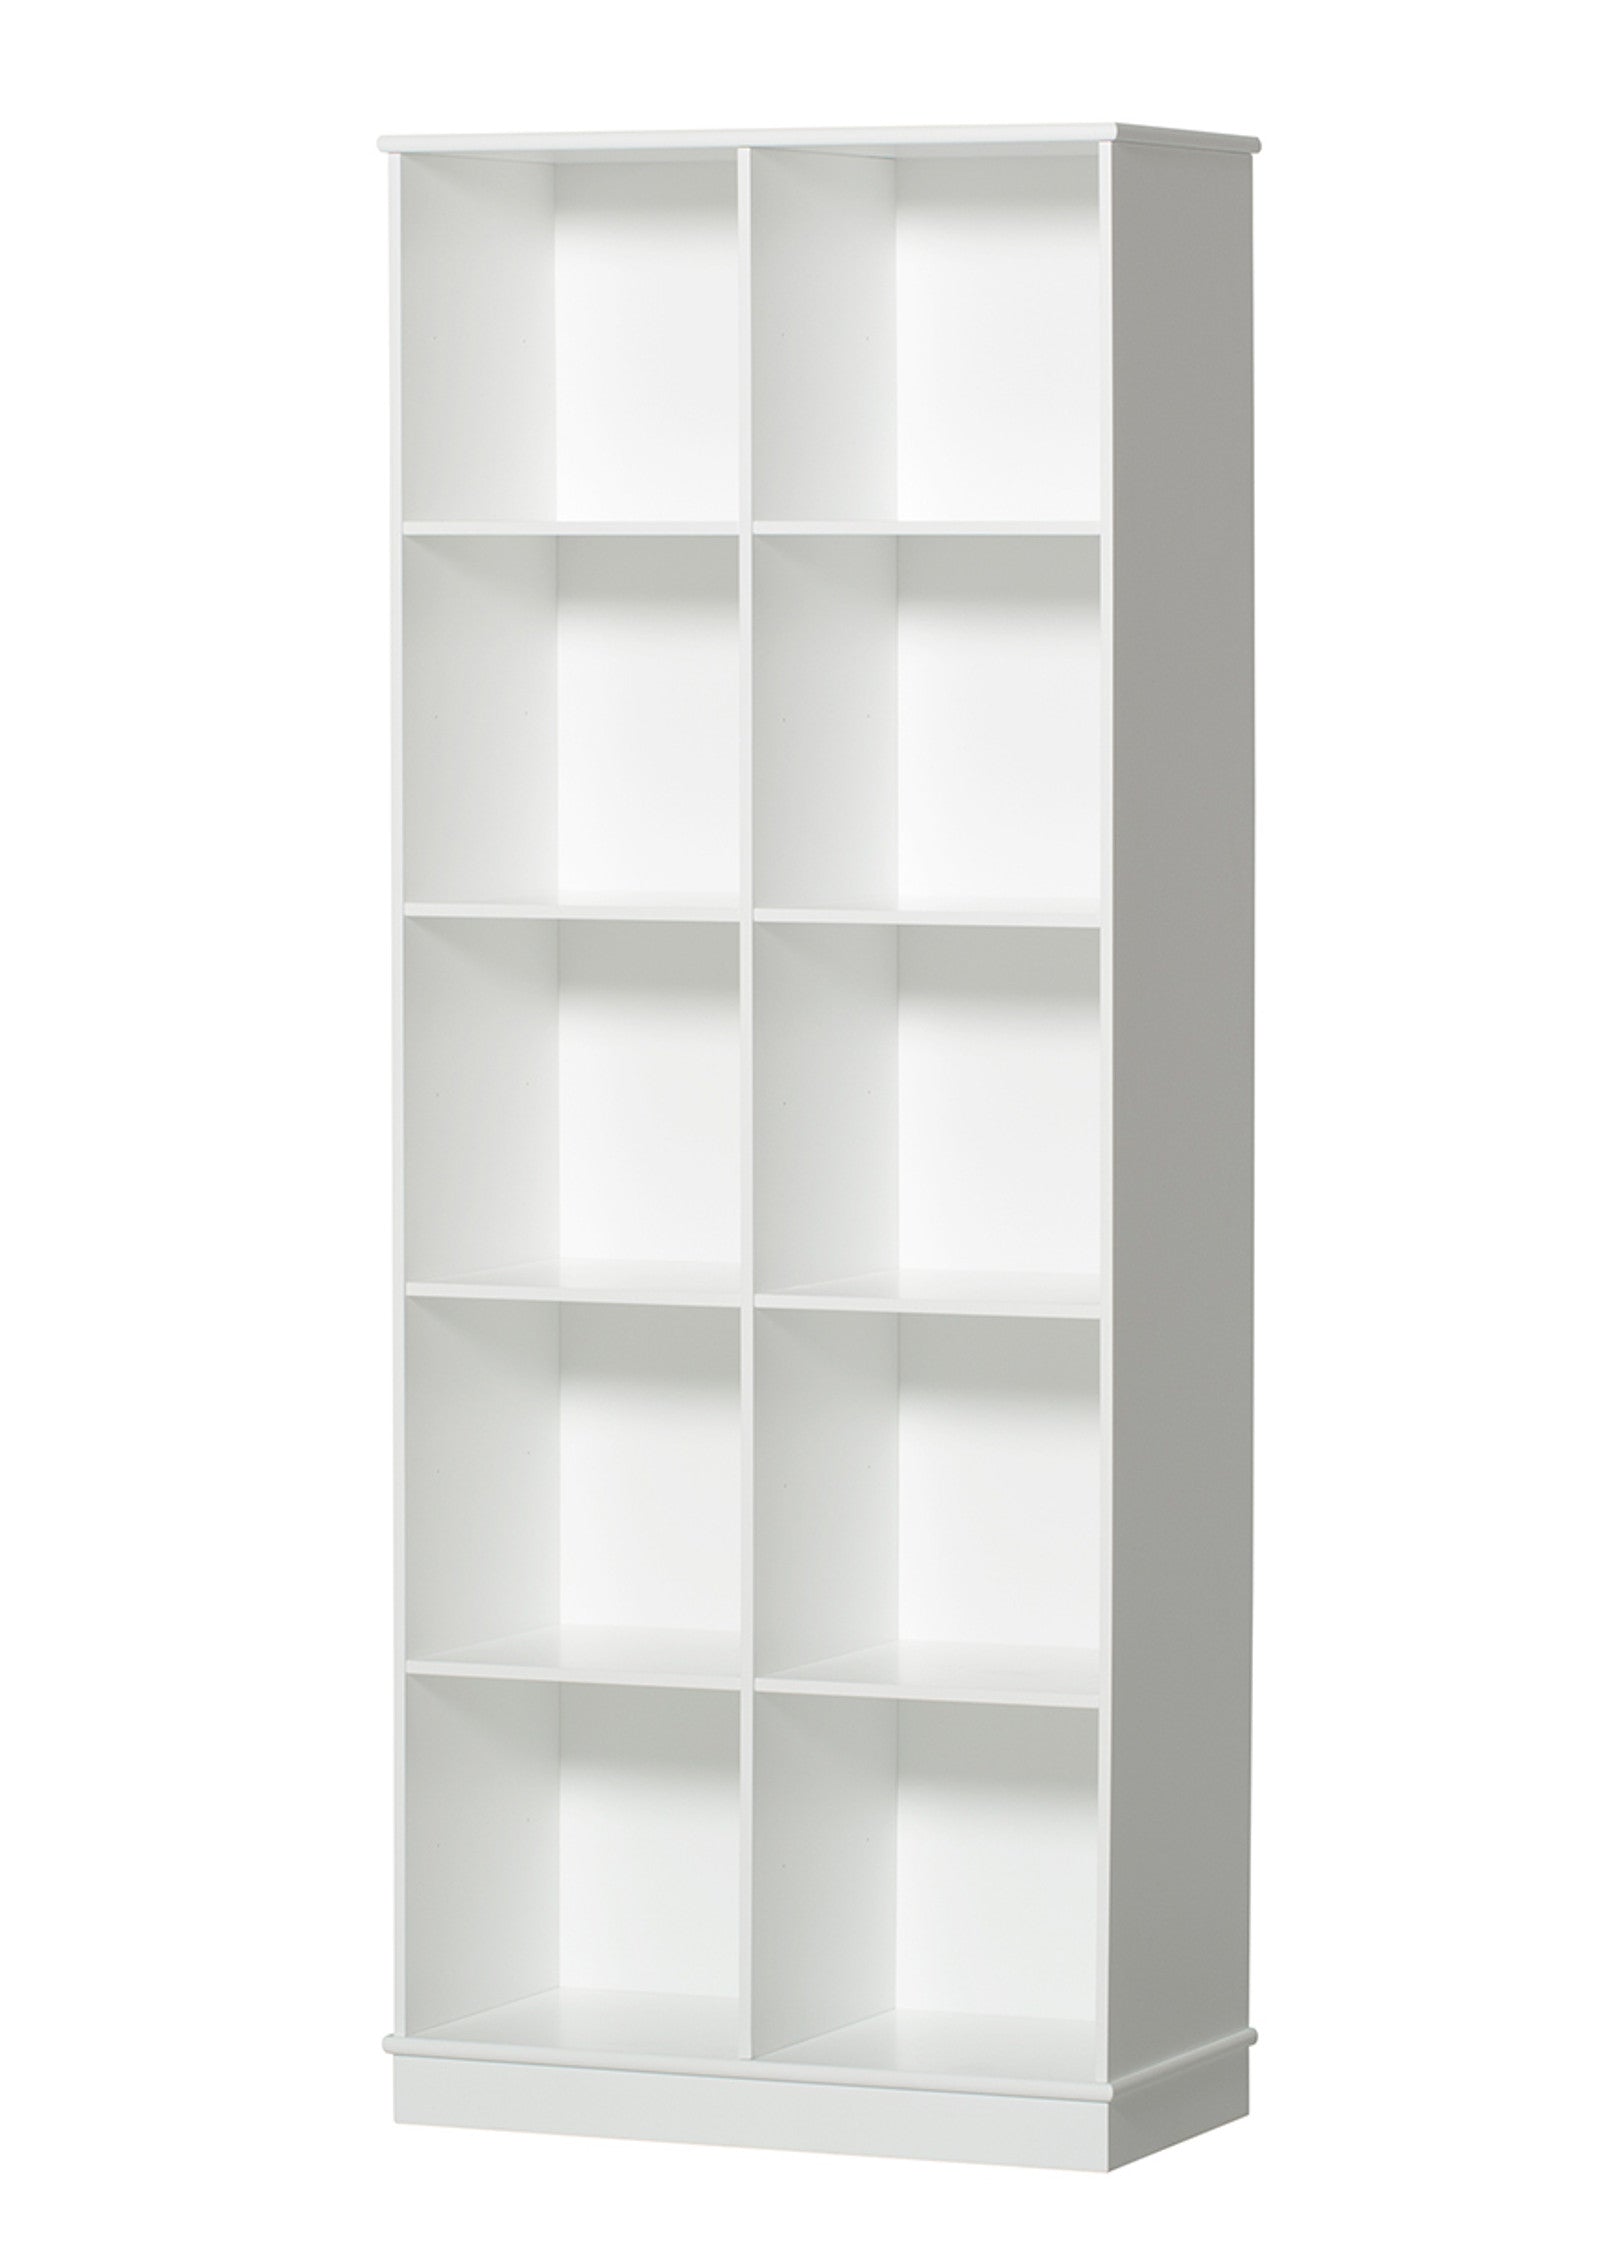 'Wood' Standregal vertikal 2 x 5 m / weiß mit Sockel